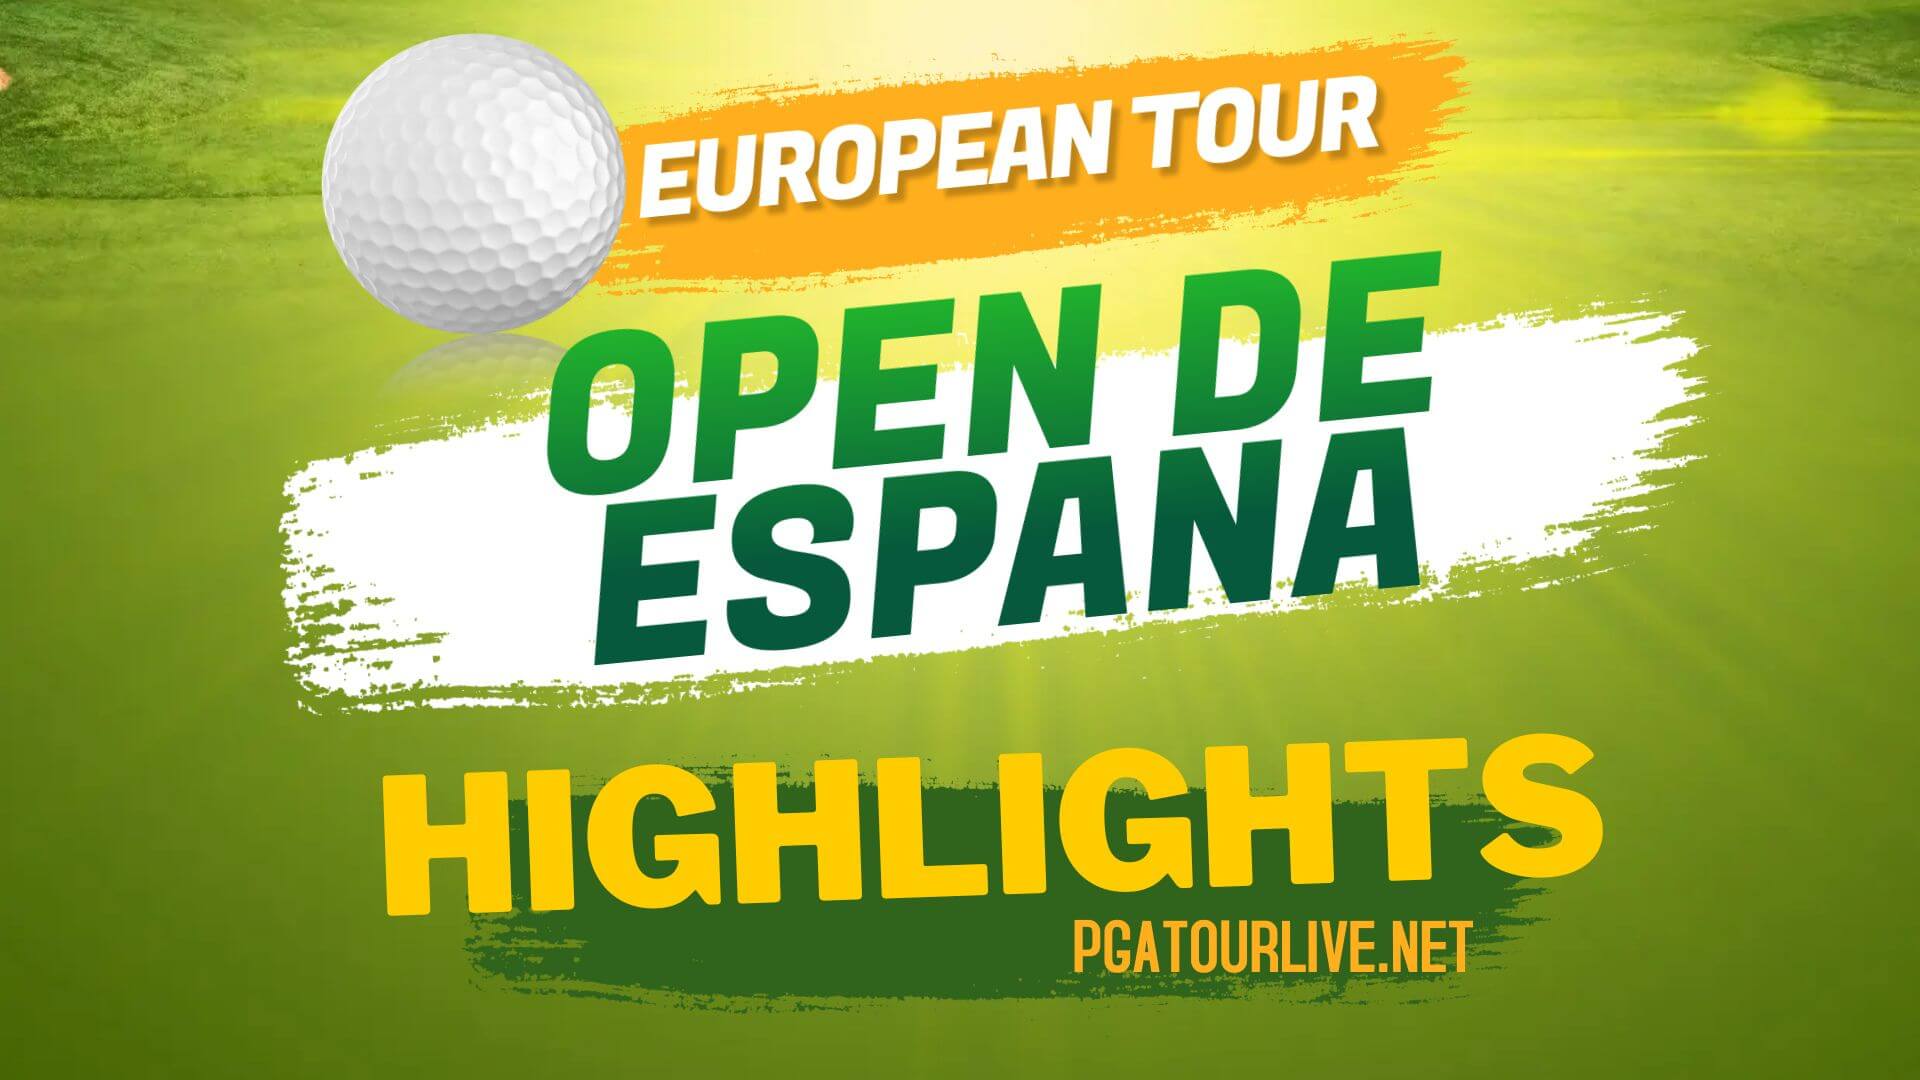 Open De Espana Highlights Day 2 European Tour 2022